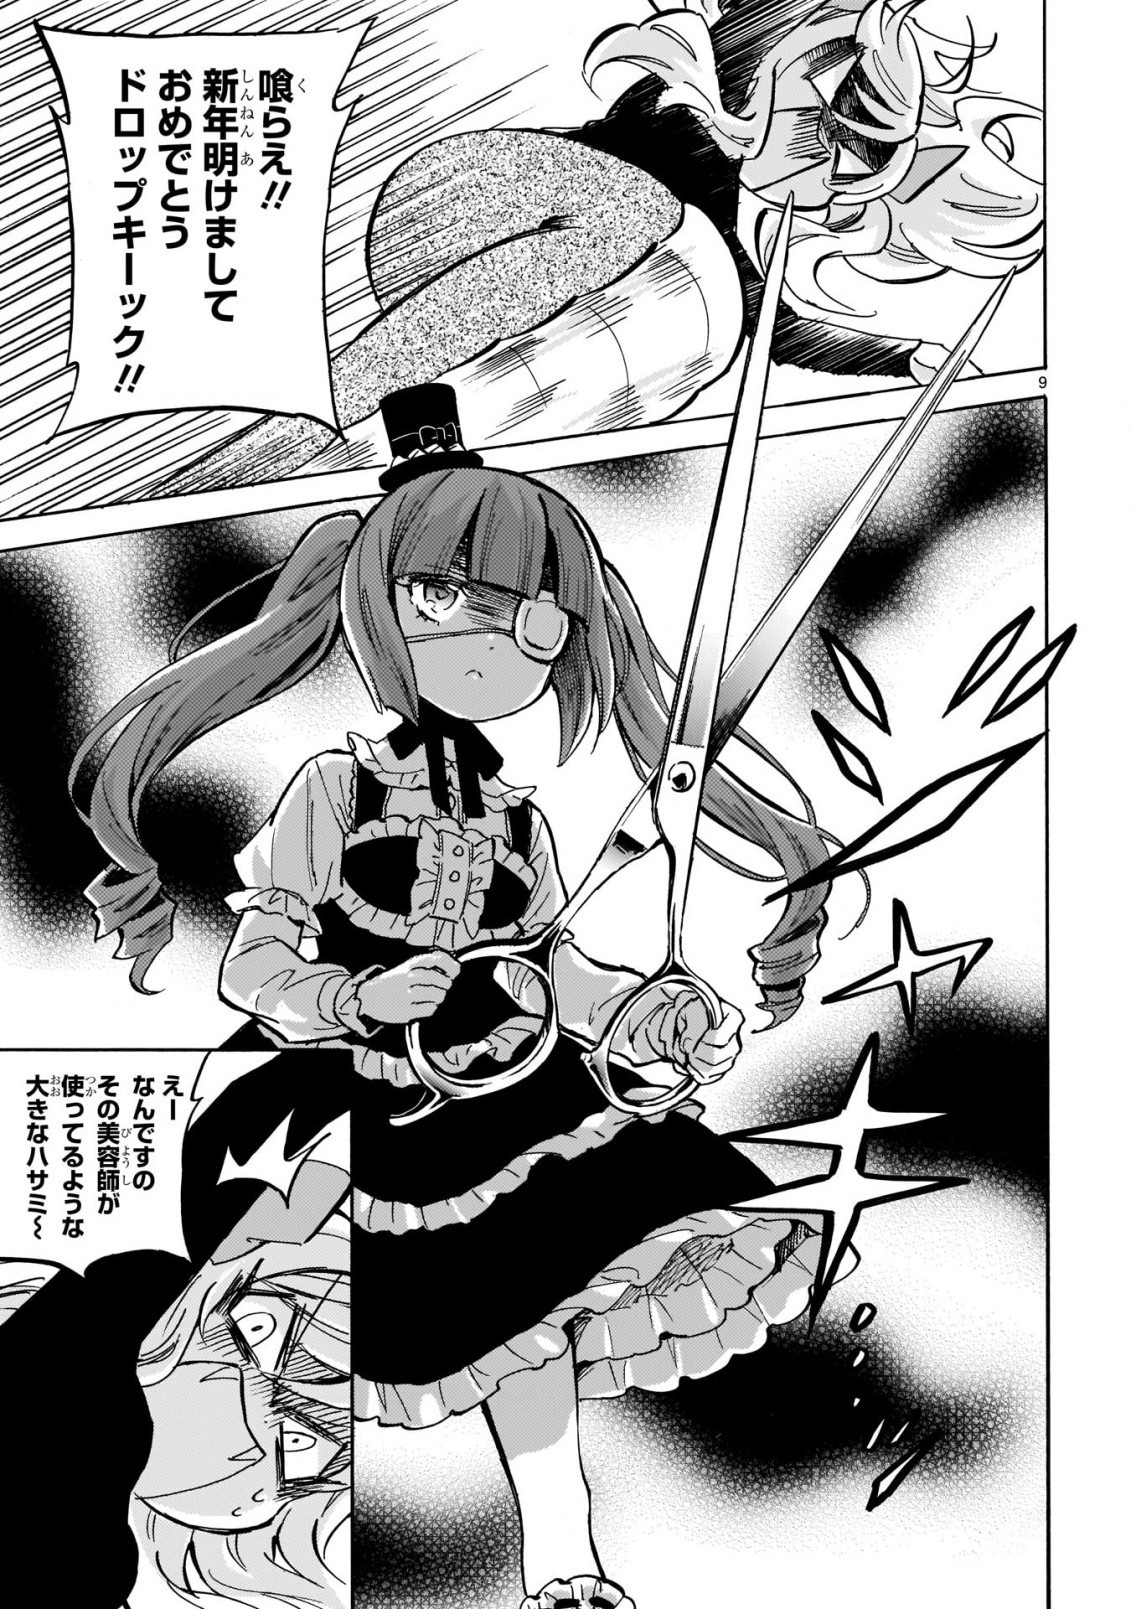 Jashin-chan Dropkick - Chapter 206 - Page 9